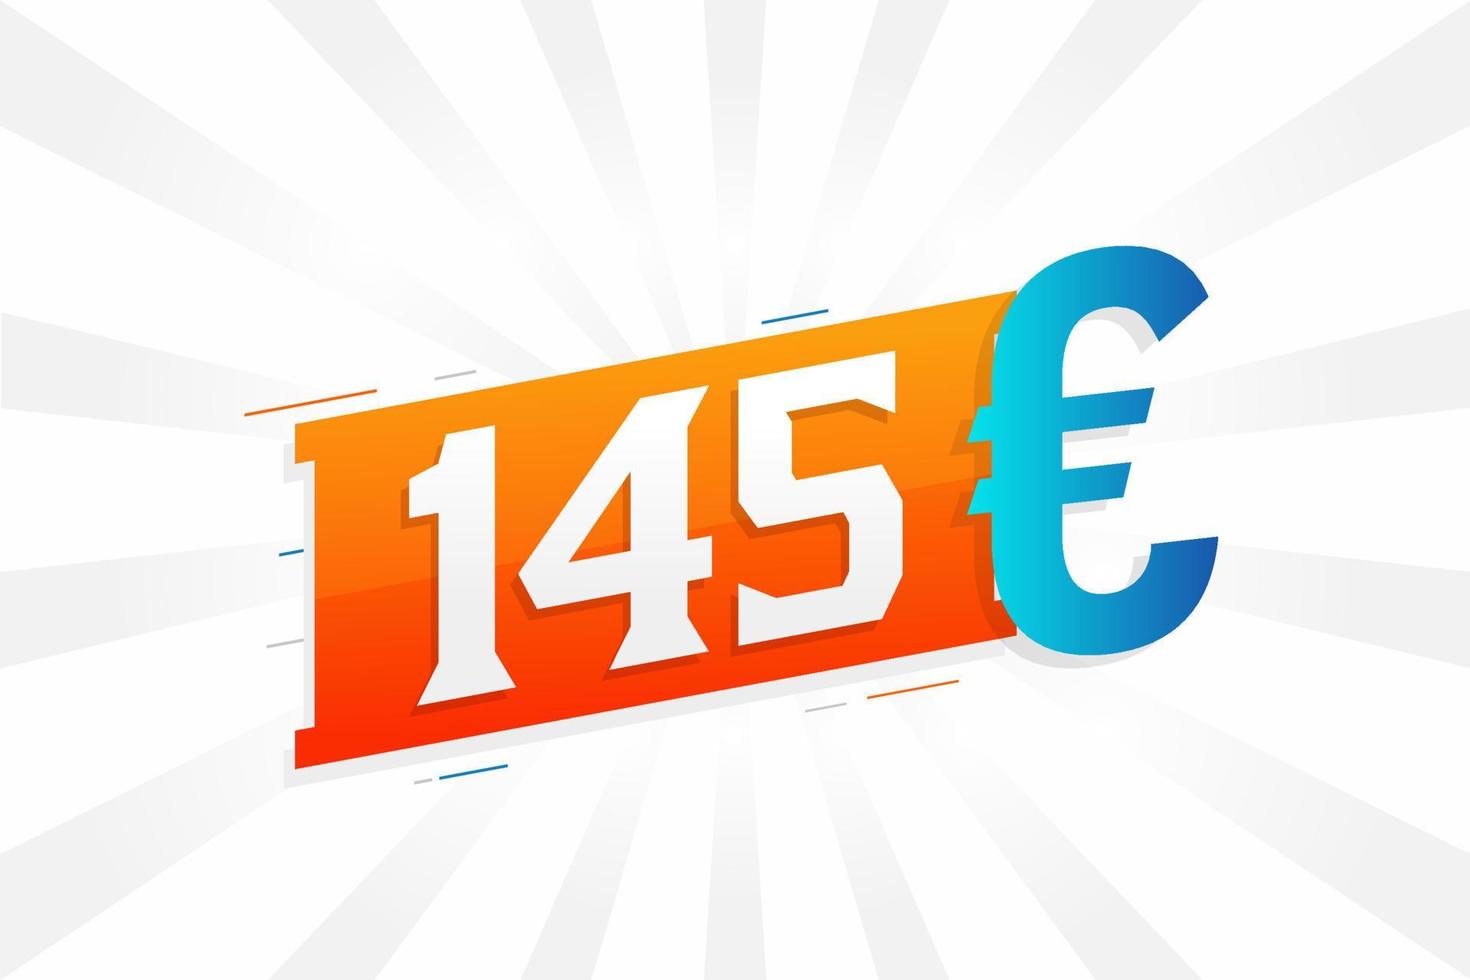 145 Euro Currency vector text symbol. 145 Euro European Union Money stock vector